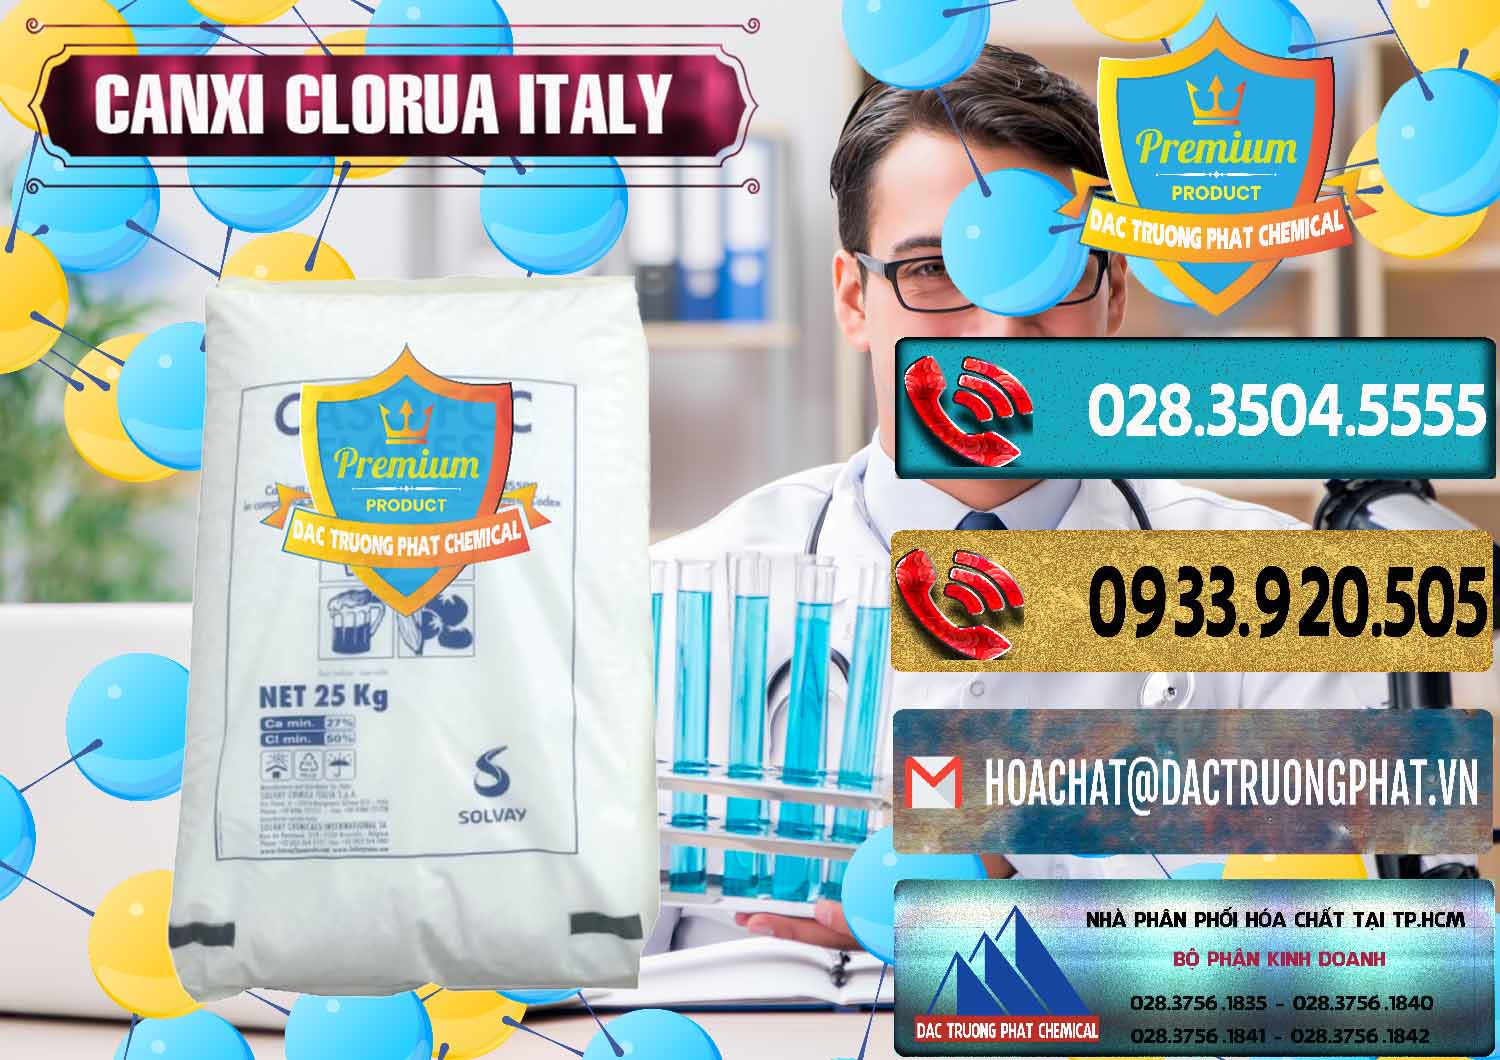 Nơi kinh doanh ( bán ) CaCl2 – Canxi Clorua Food Grade Ý Italy - 0435 - Đơn vị cung cấp và phân phối hóa chất tại TP.HCM - hoachatdetnhuom.com